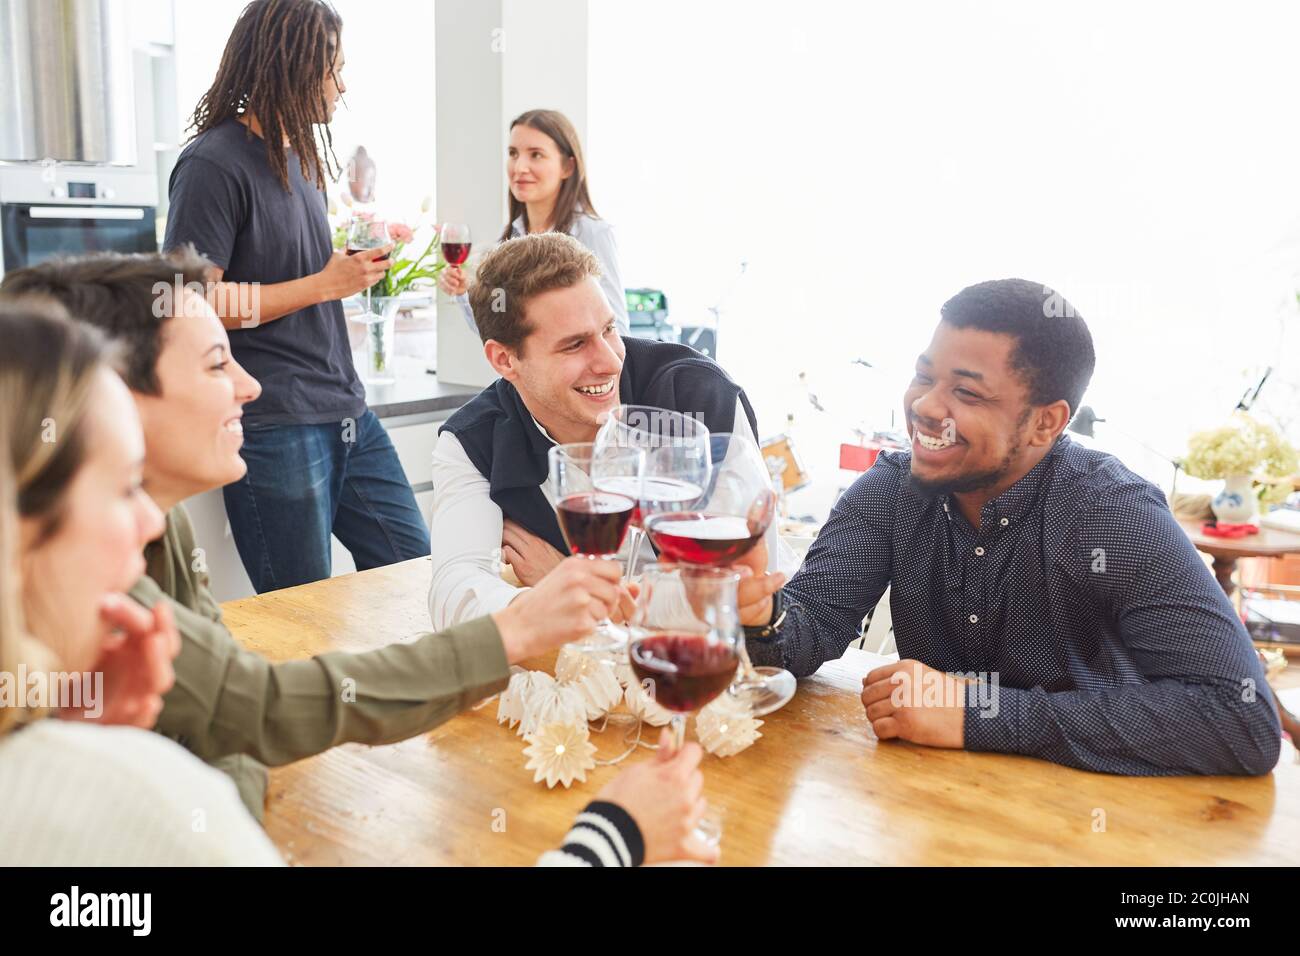 Les élèves qui rient boivent du vin ensemble à la maison dans une cuisine commune Banque D'Images